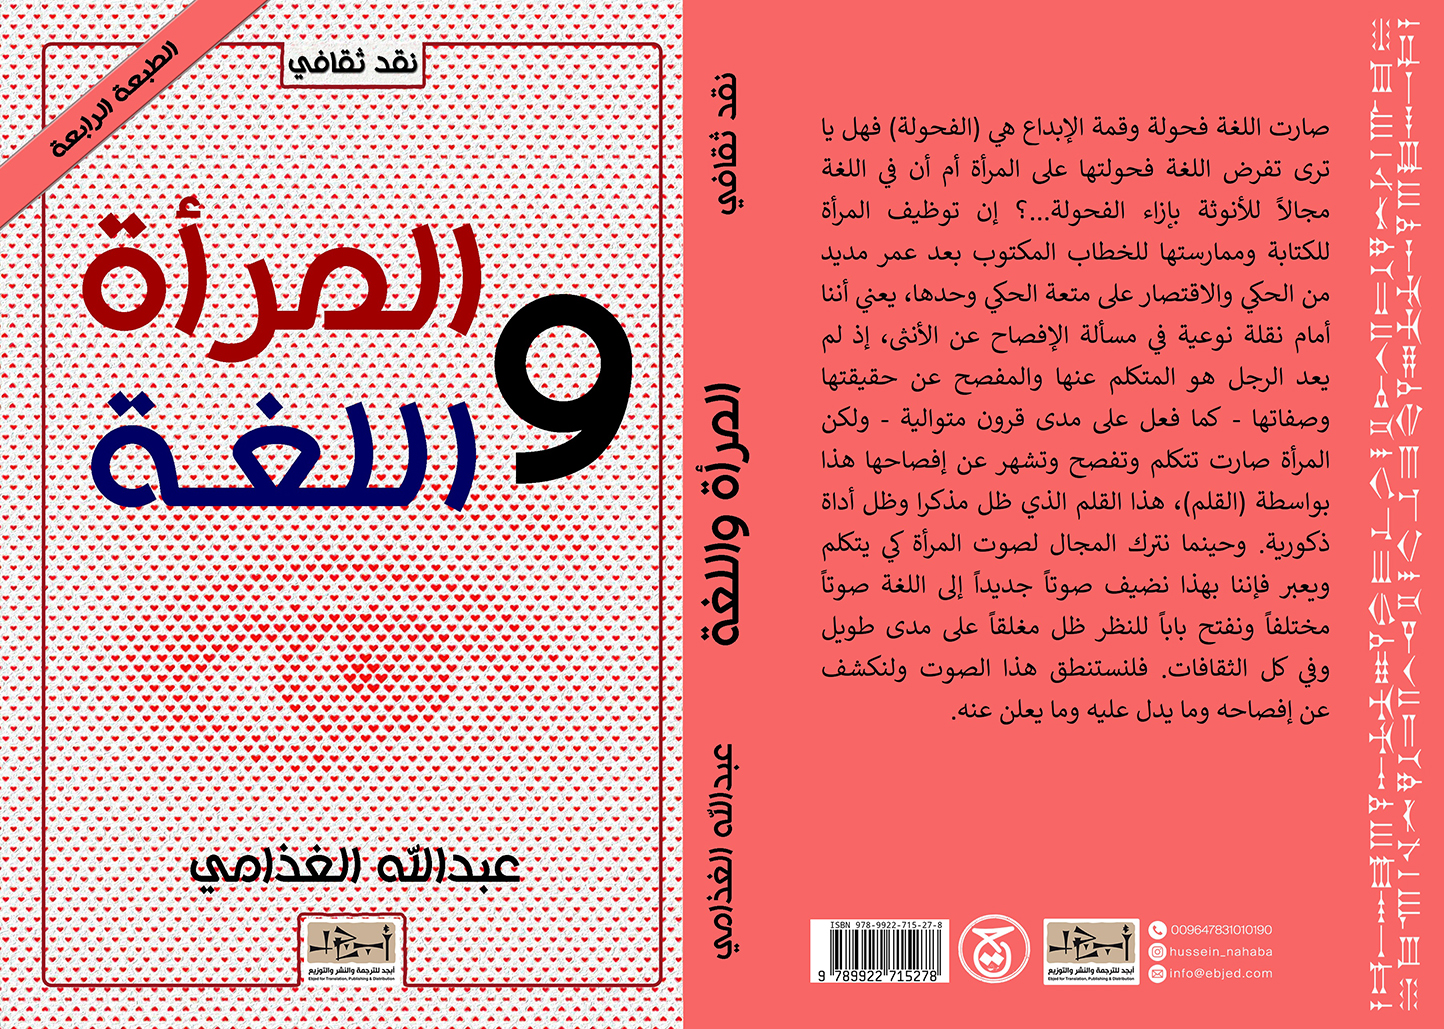 الكتاب: المرأة واللغة تأليف: عبد الله الغذامي التصنيف: نقد ثقافي